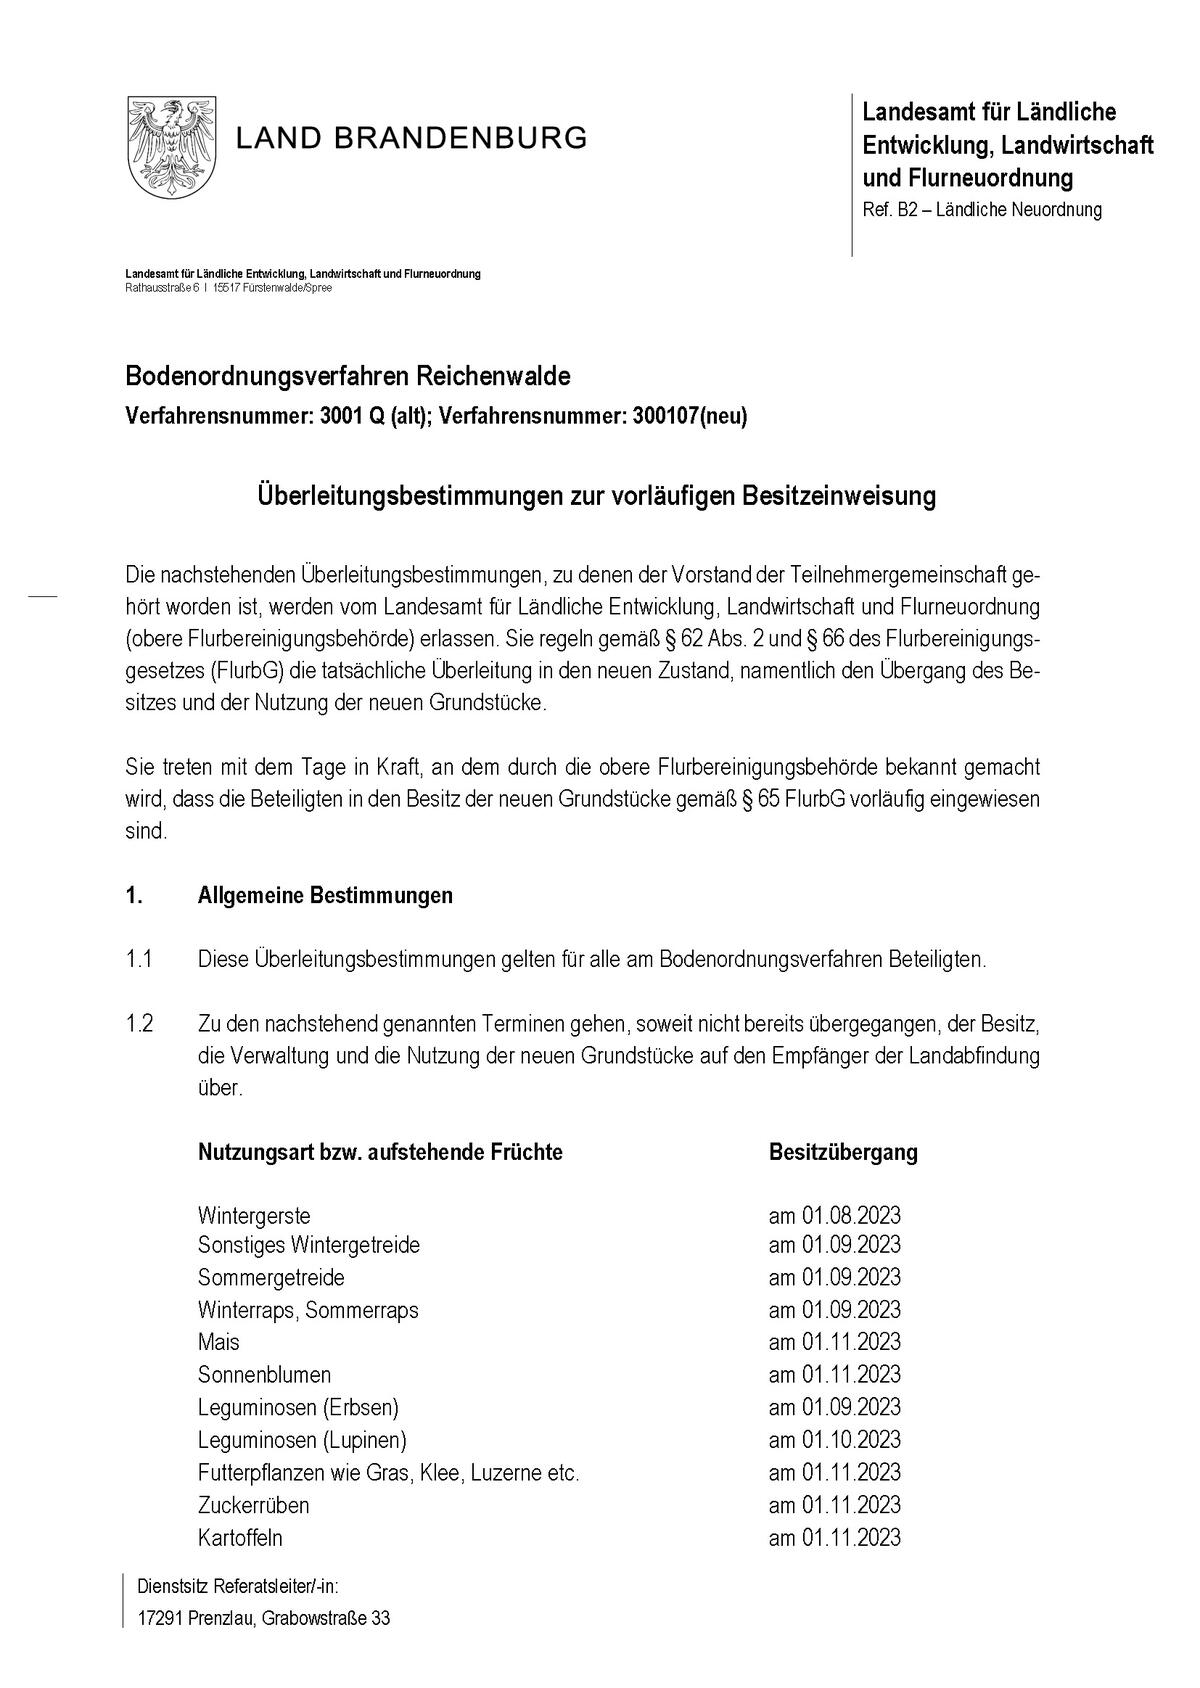 Bild vergrößern: BOV Reichenwalde Überleitungsbestimmungen_Seite_1